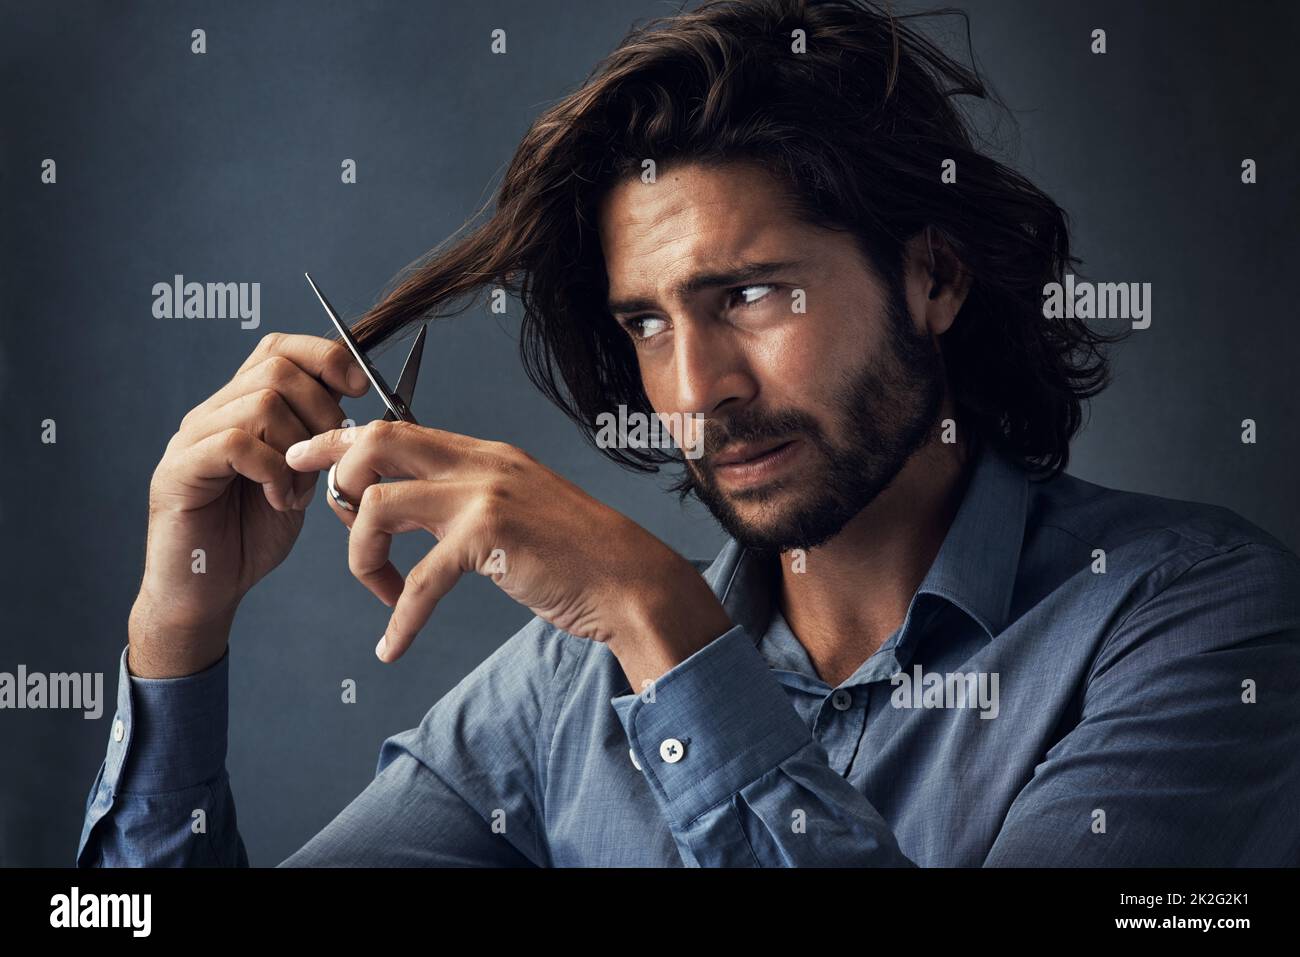 È il momento di tritare tutto. Studio girato di un bel giovane uomo tagliando i capelli su uno sfondo grigio. Foto Stock